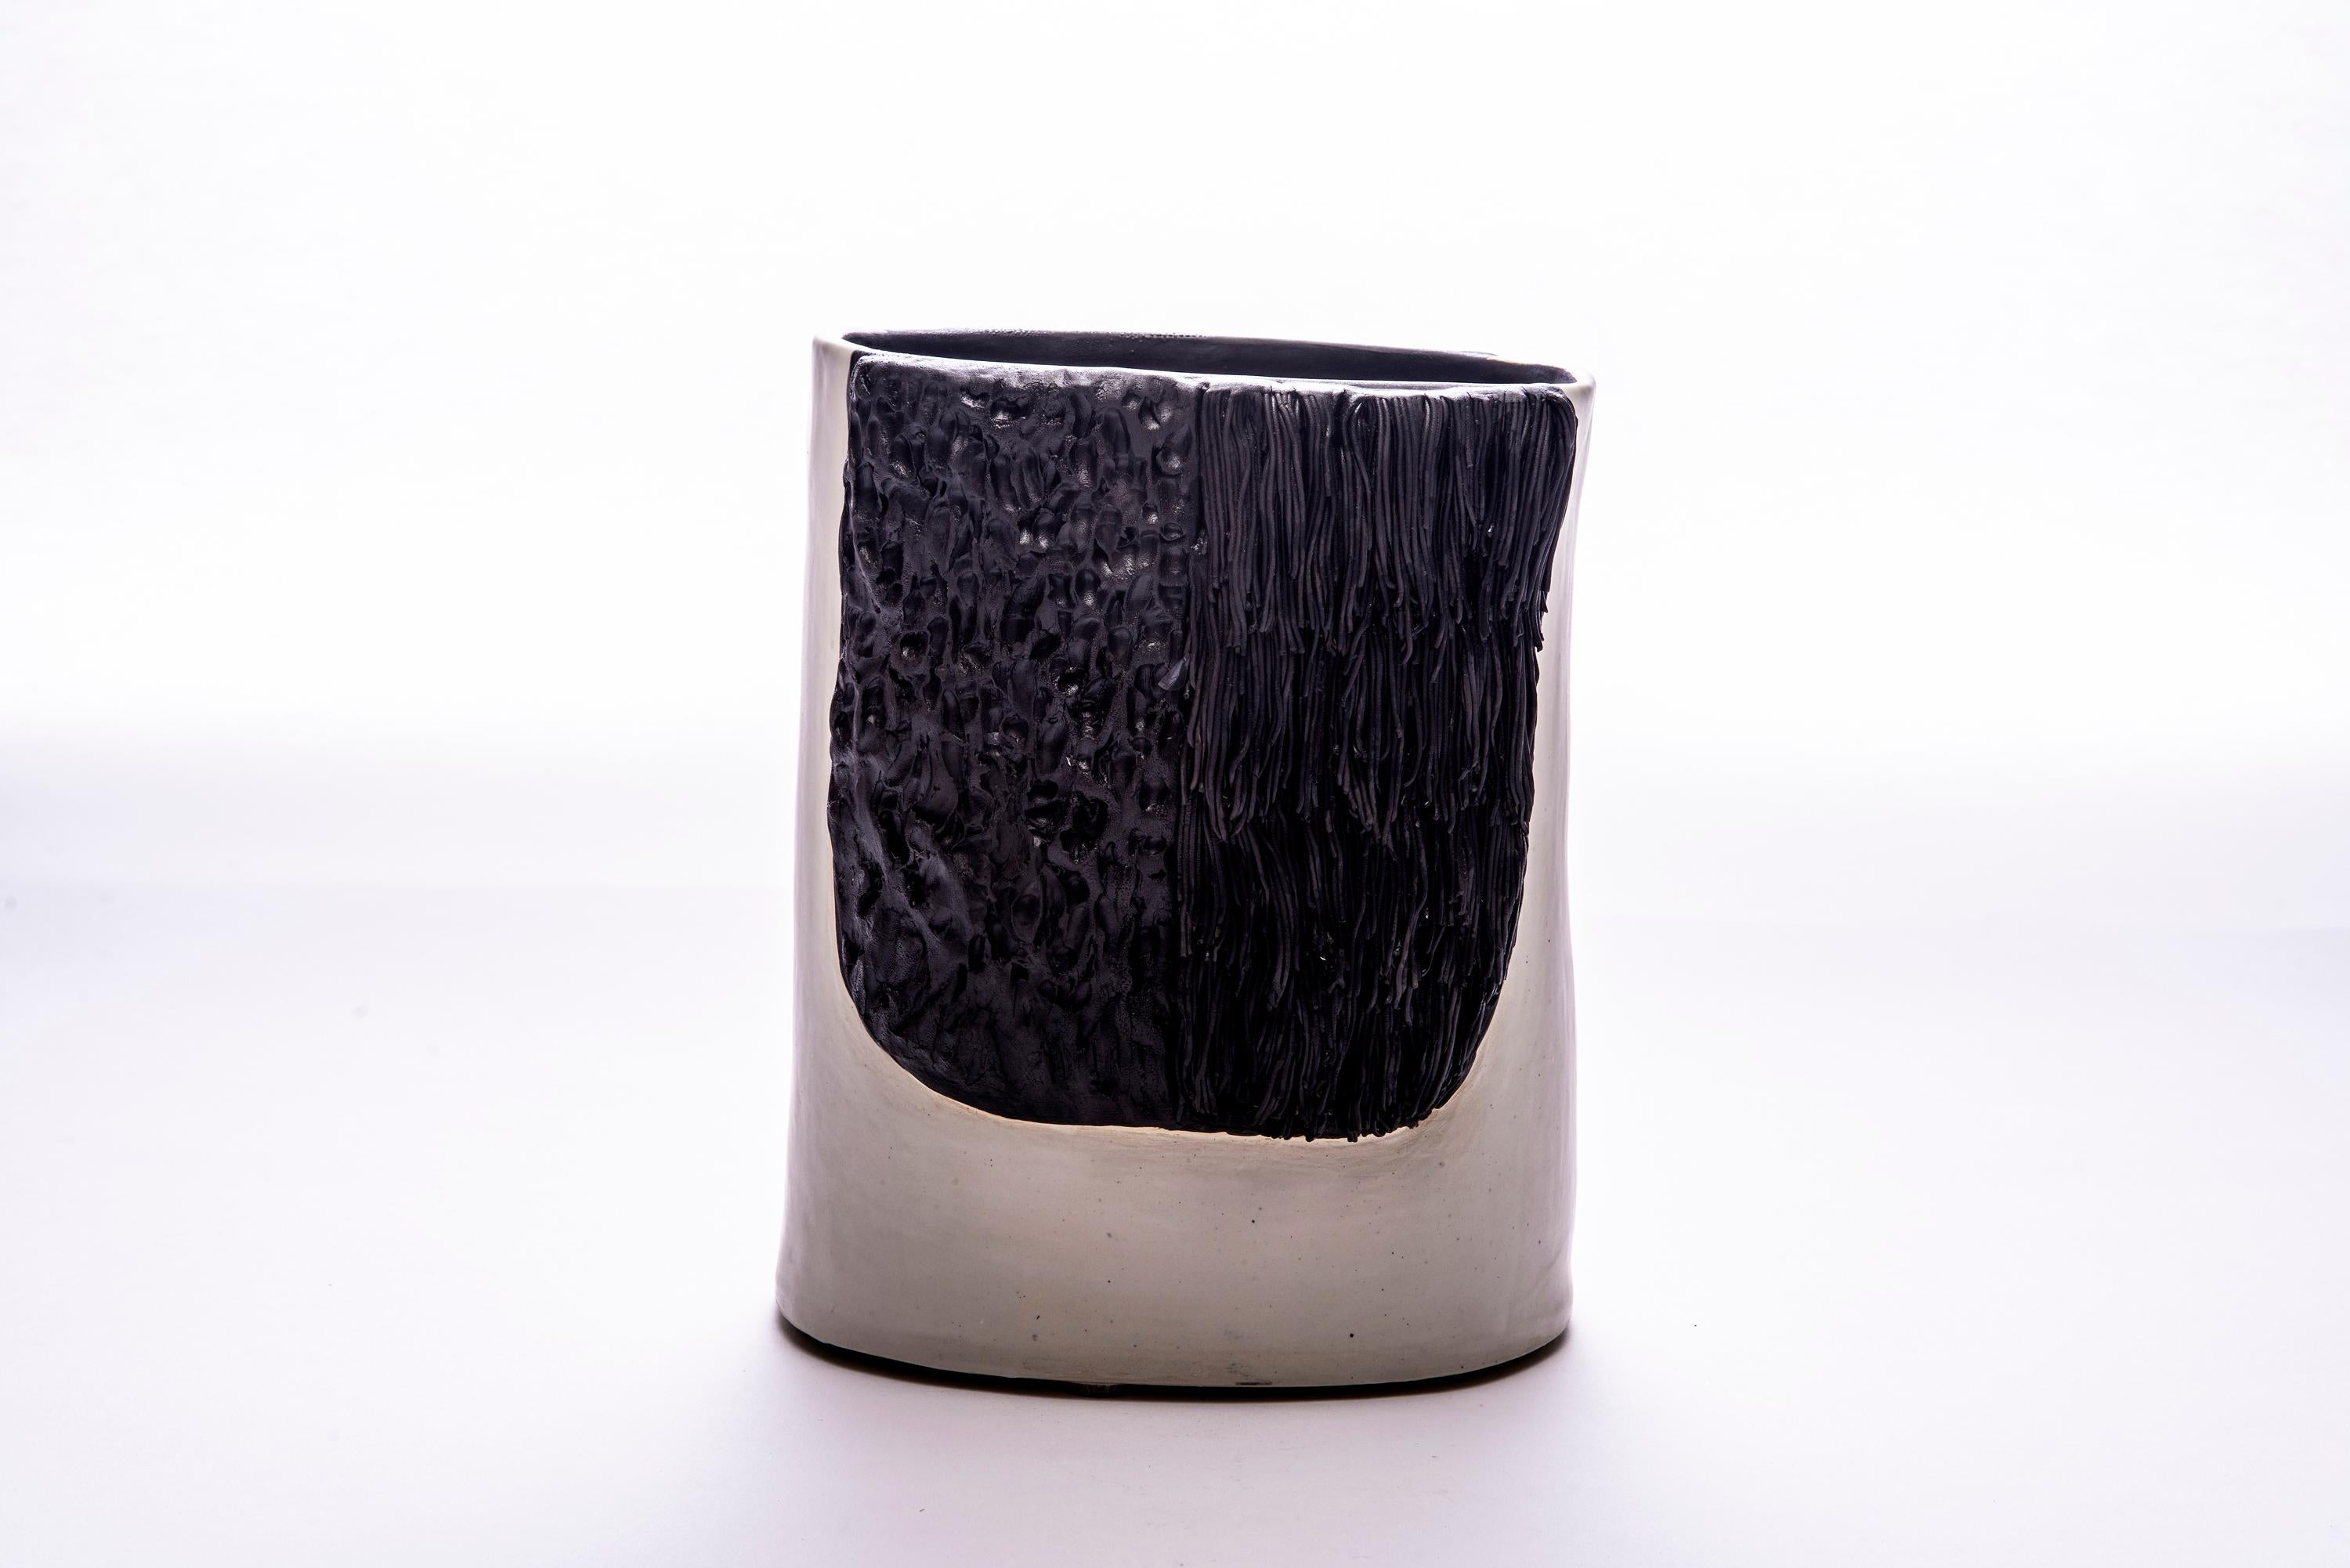 Trish DeMasi
Bruno, 2020
Keramisch glasiert
9.25 x 7 x 6 Zoll

Die Moderno-Kollektion von Trish DeMasi zeichnet sich durch geometrische Formen, üppige Texturen und angenehme neutrale Farben in Form von glasierten Keramikgefäßen und Dosen aus.